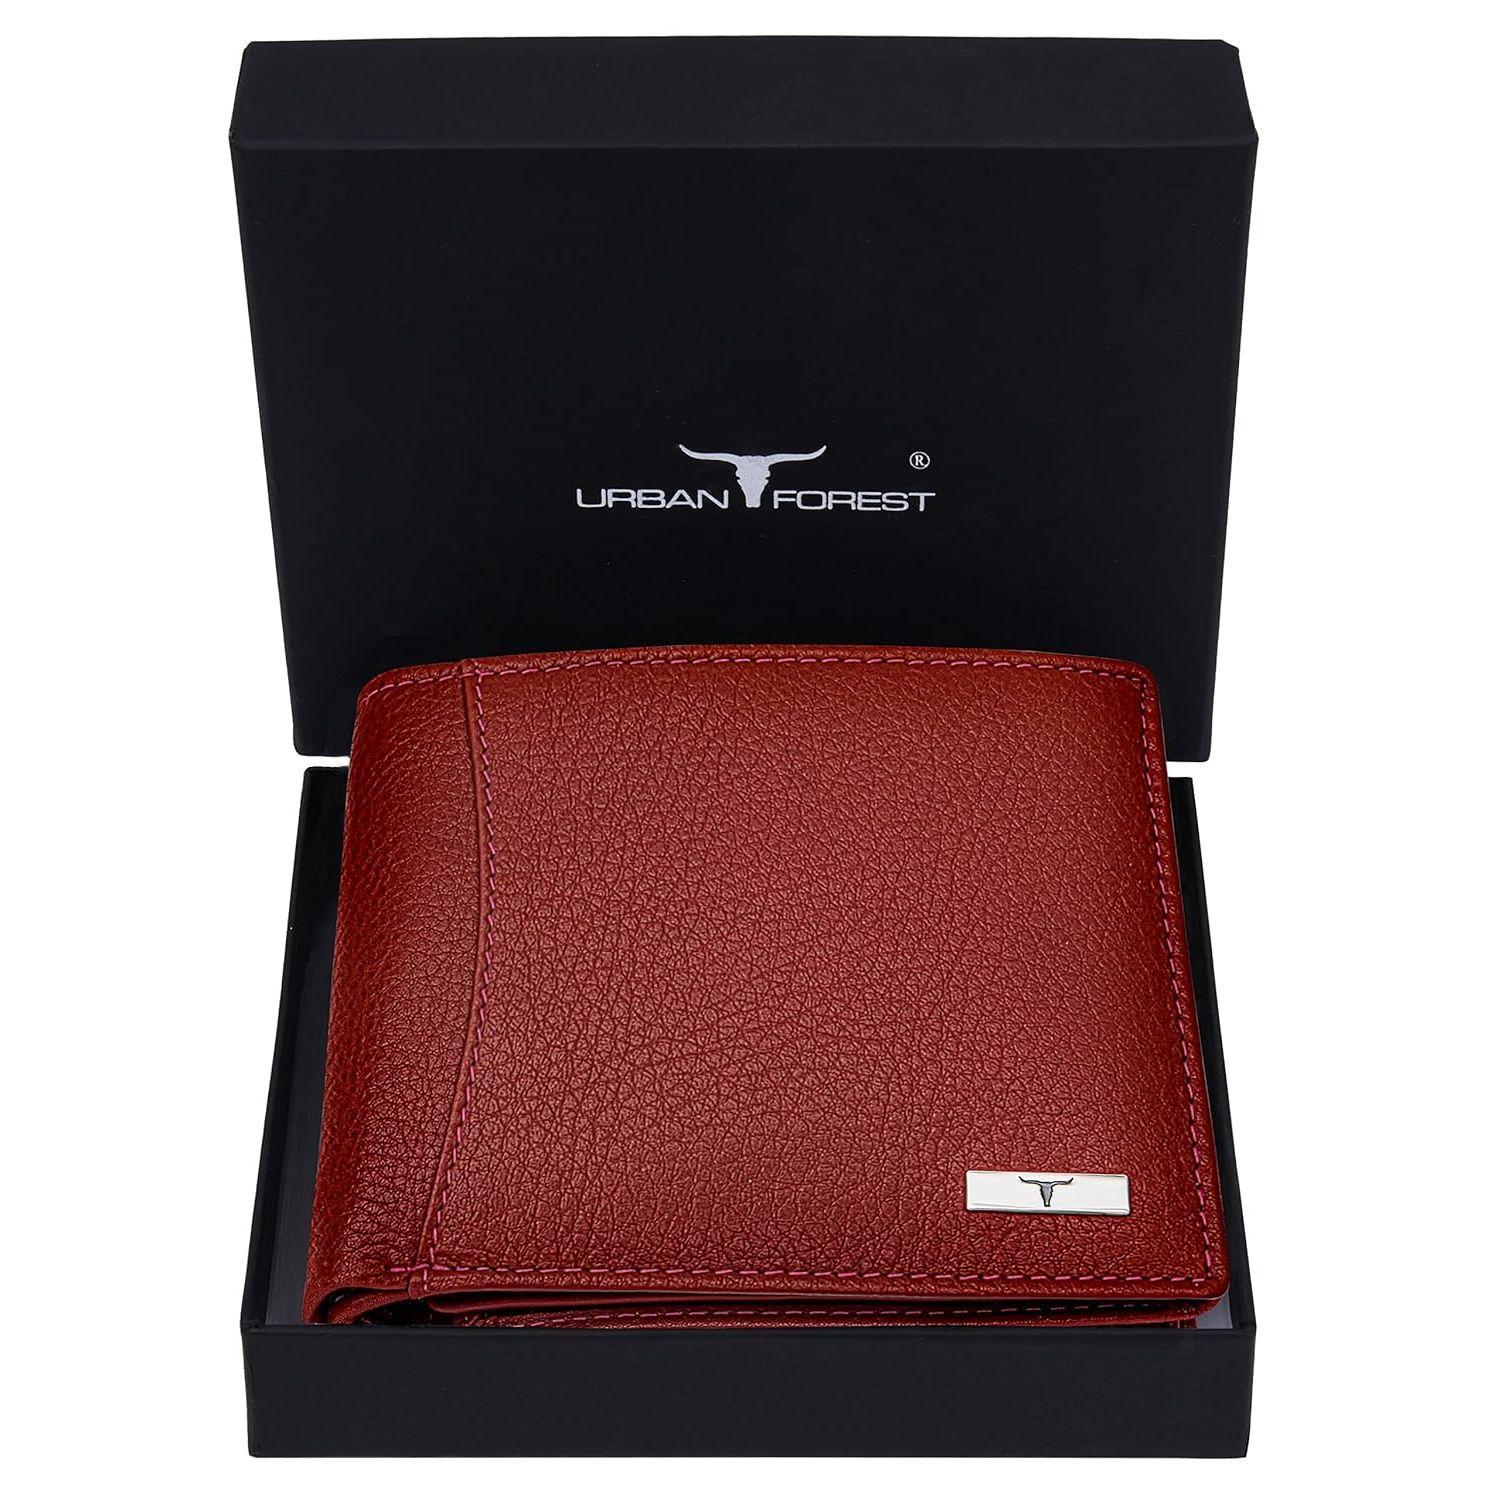 Vintage Goat leather Bags Oliver Red Leather Wallet for Men